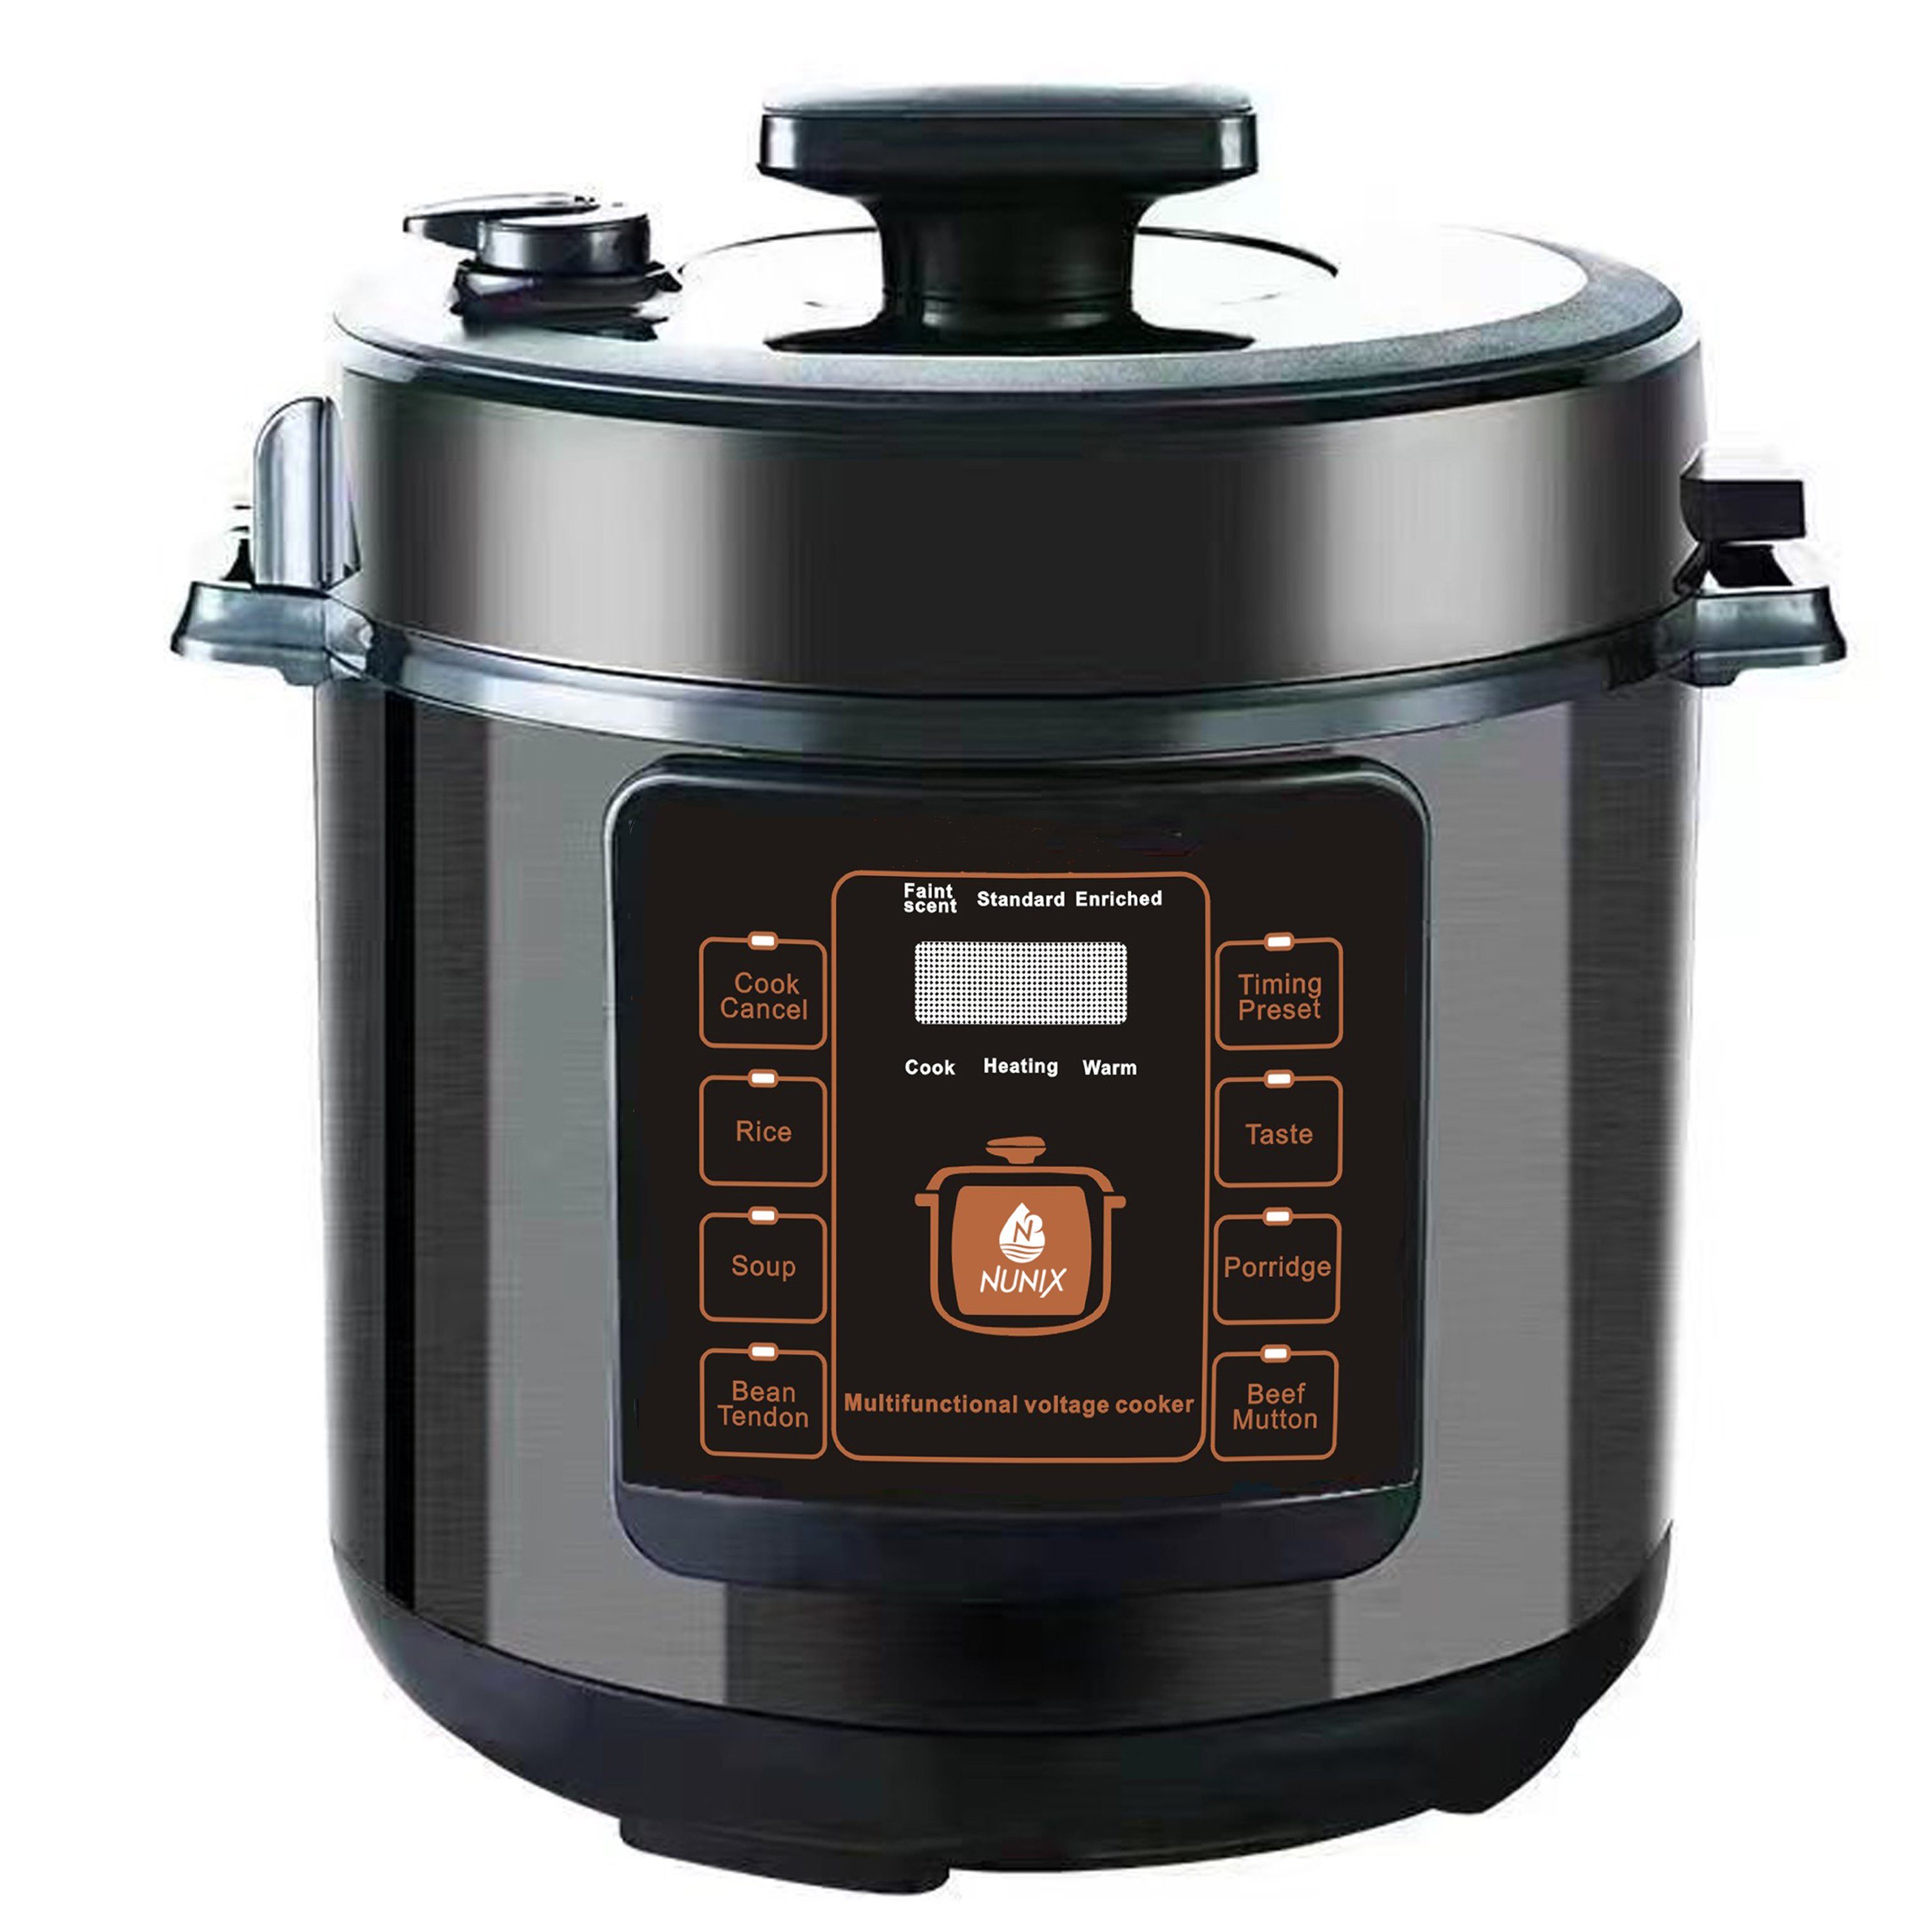 Mutoy Reiskocher Digitaler Reiskocher mit Dampfgarer weiß,Multikocher 6 Liter, Schnellkochtopf,Warmhaltefunktion, Timer,8 Automatische Programme